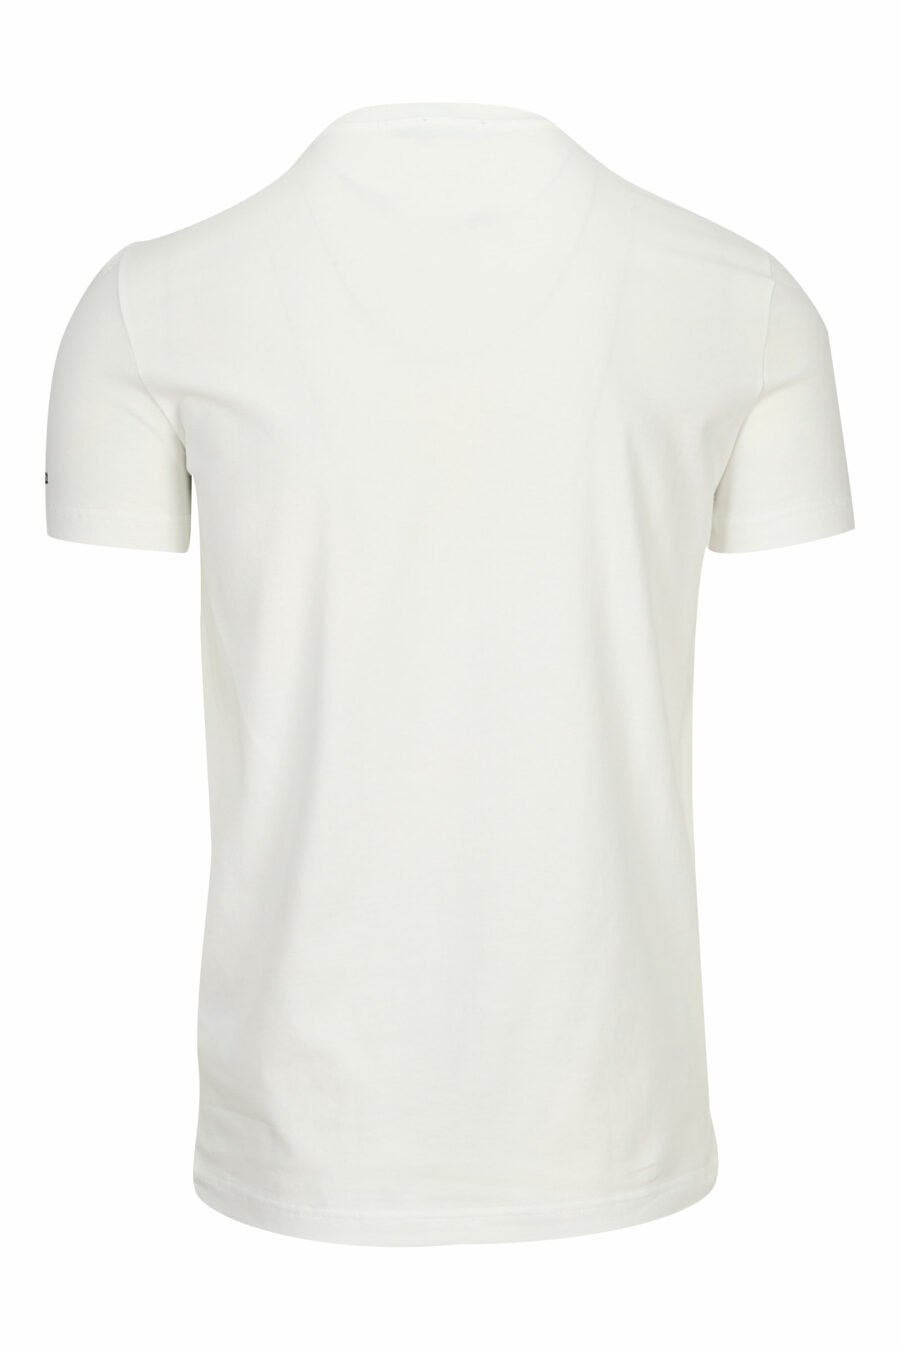 T-shirt blanc avec "sous-vêtements" en minilogue - 8032674811561 1